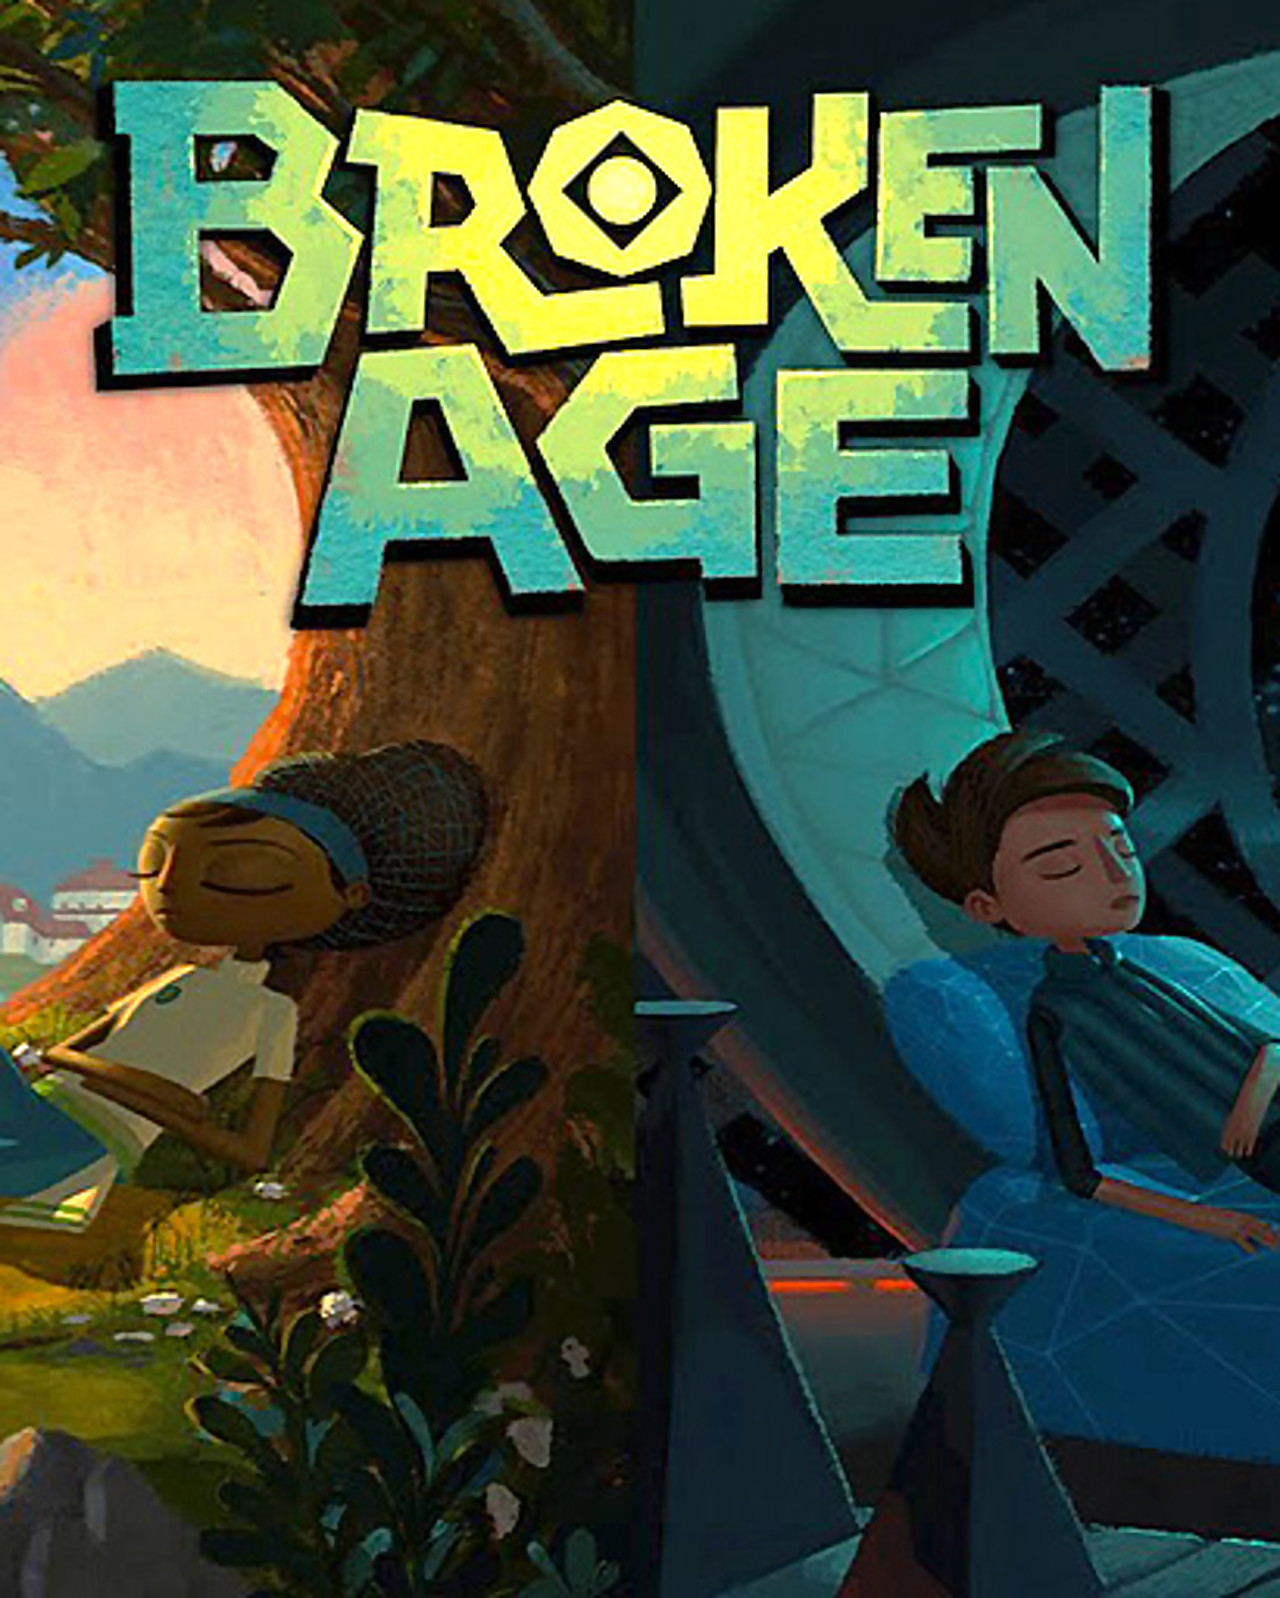 Game is broken. Broken age. Broken age обложка. Игры жанра приключения. Broken игра.